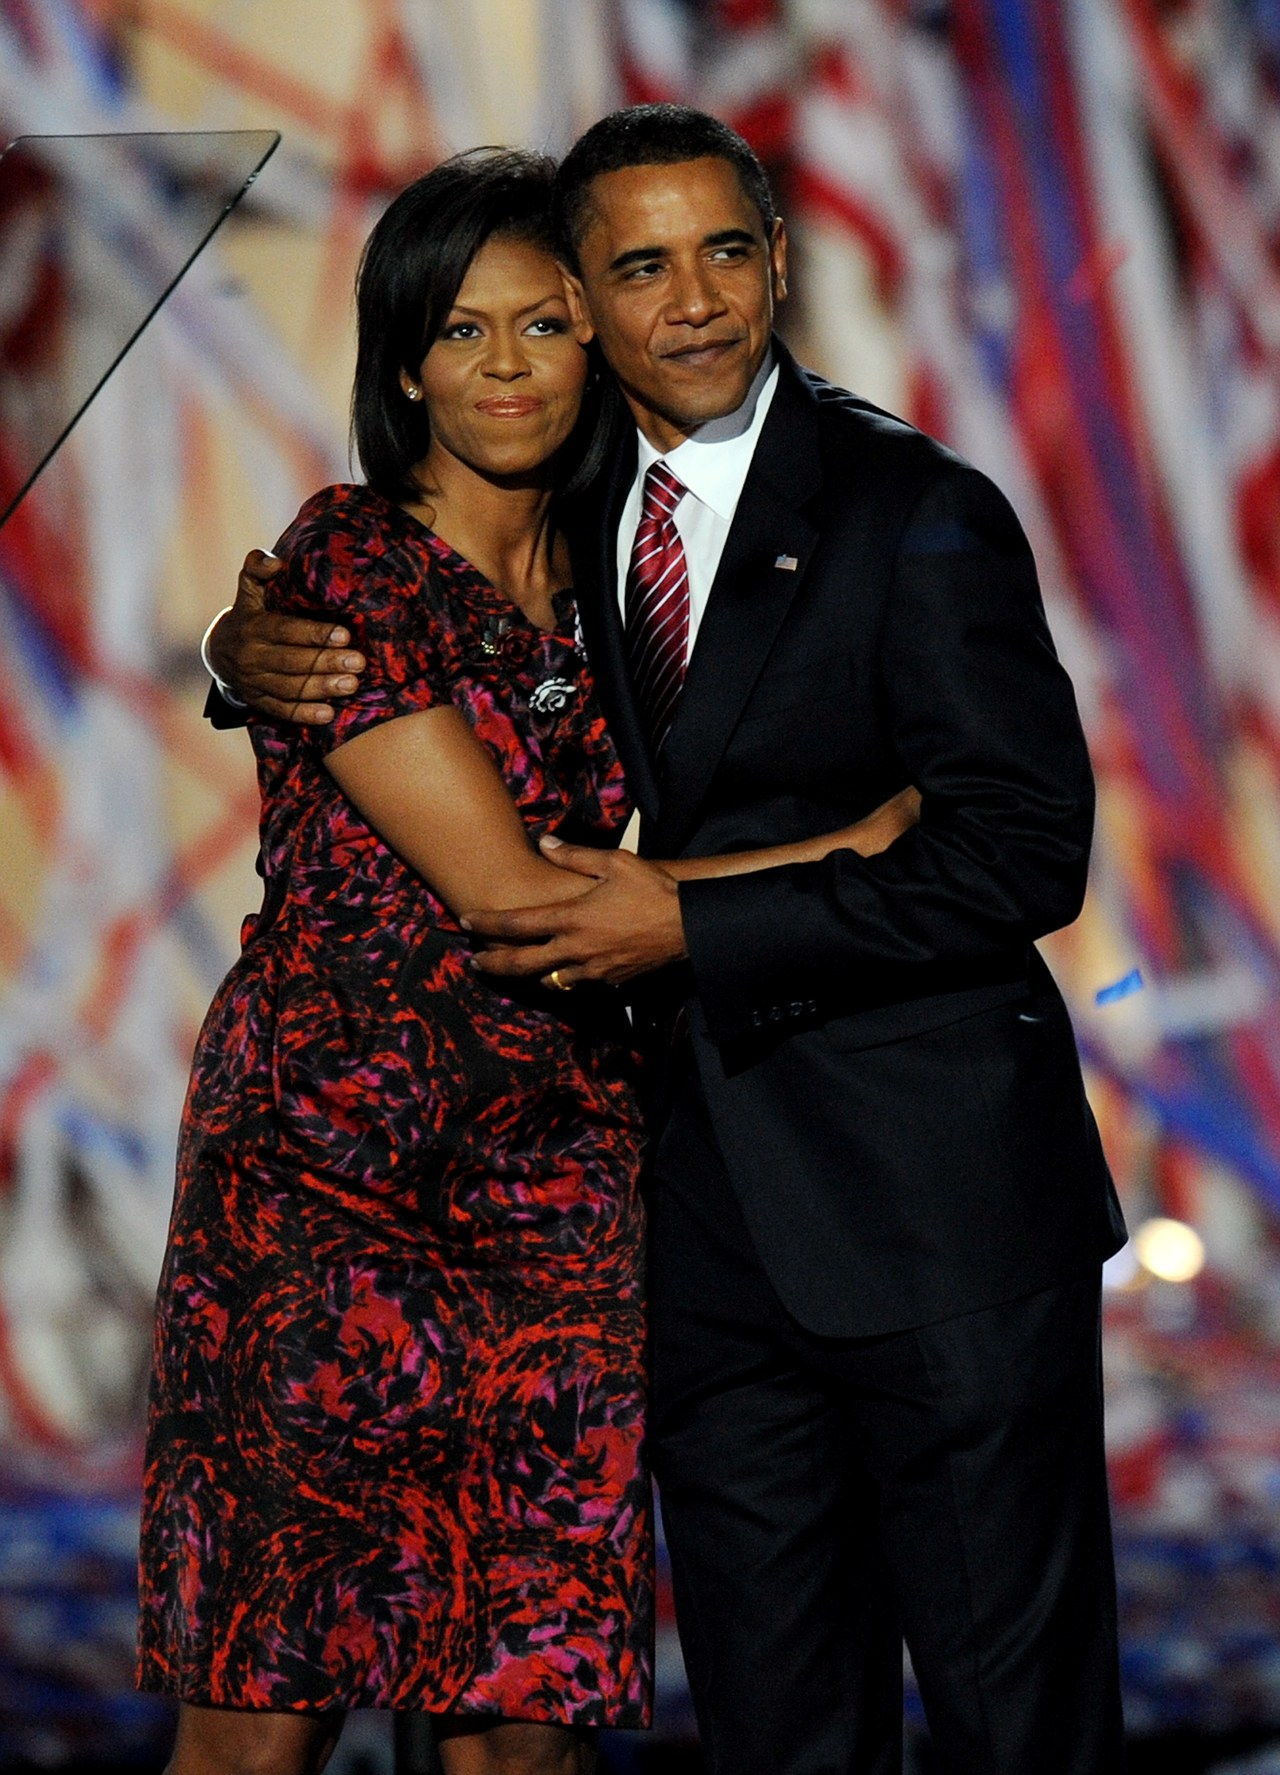 باراك and Michelle stand together after his speech at the 2008 Democratic National Convention in Denver, CO. 